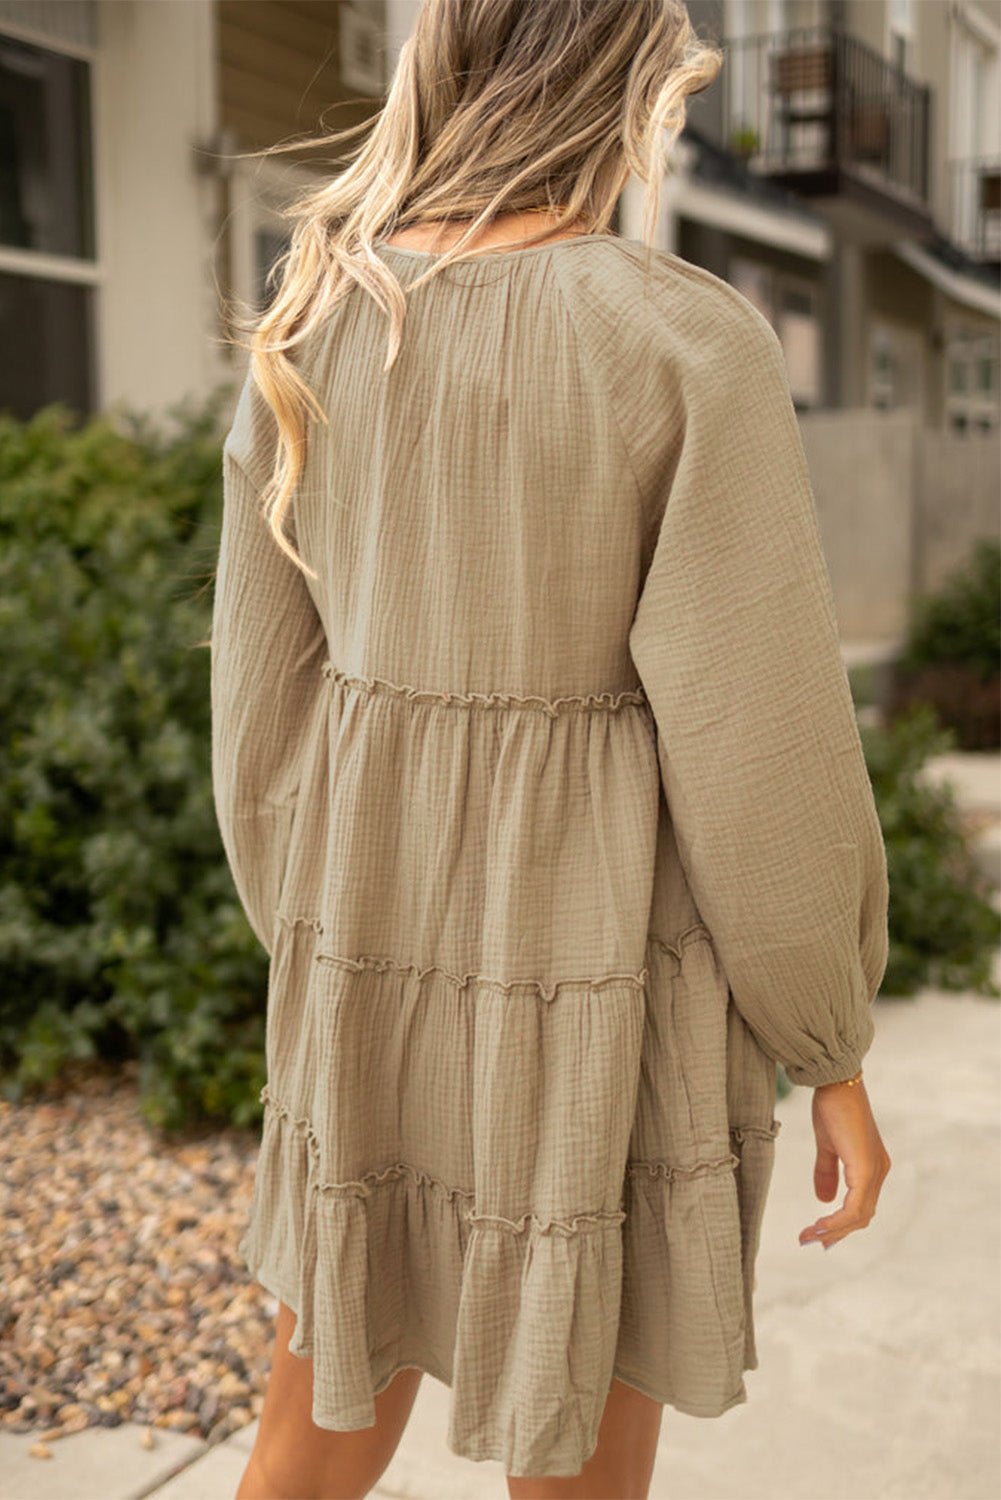 Gestuftes Minikleid aus hellkhakifarbenem Baumwollkrepp mit V-Ausschnitt und Rüschen